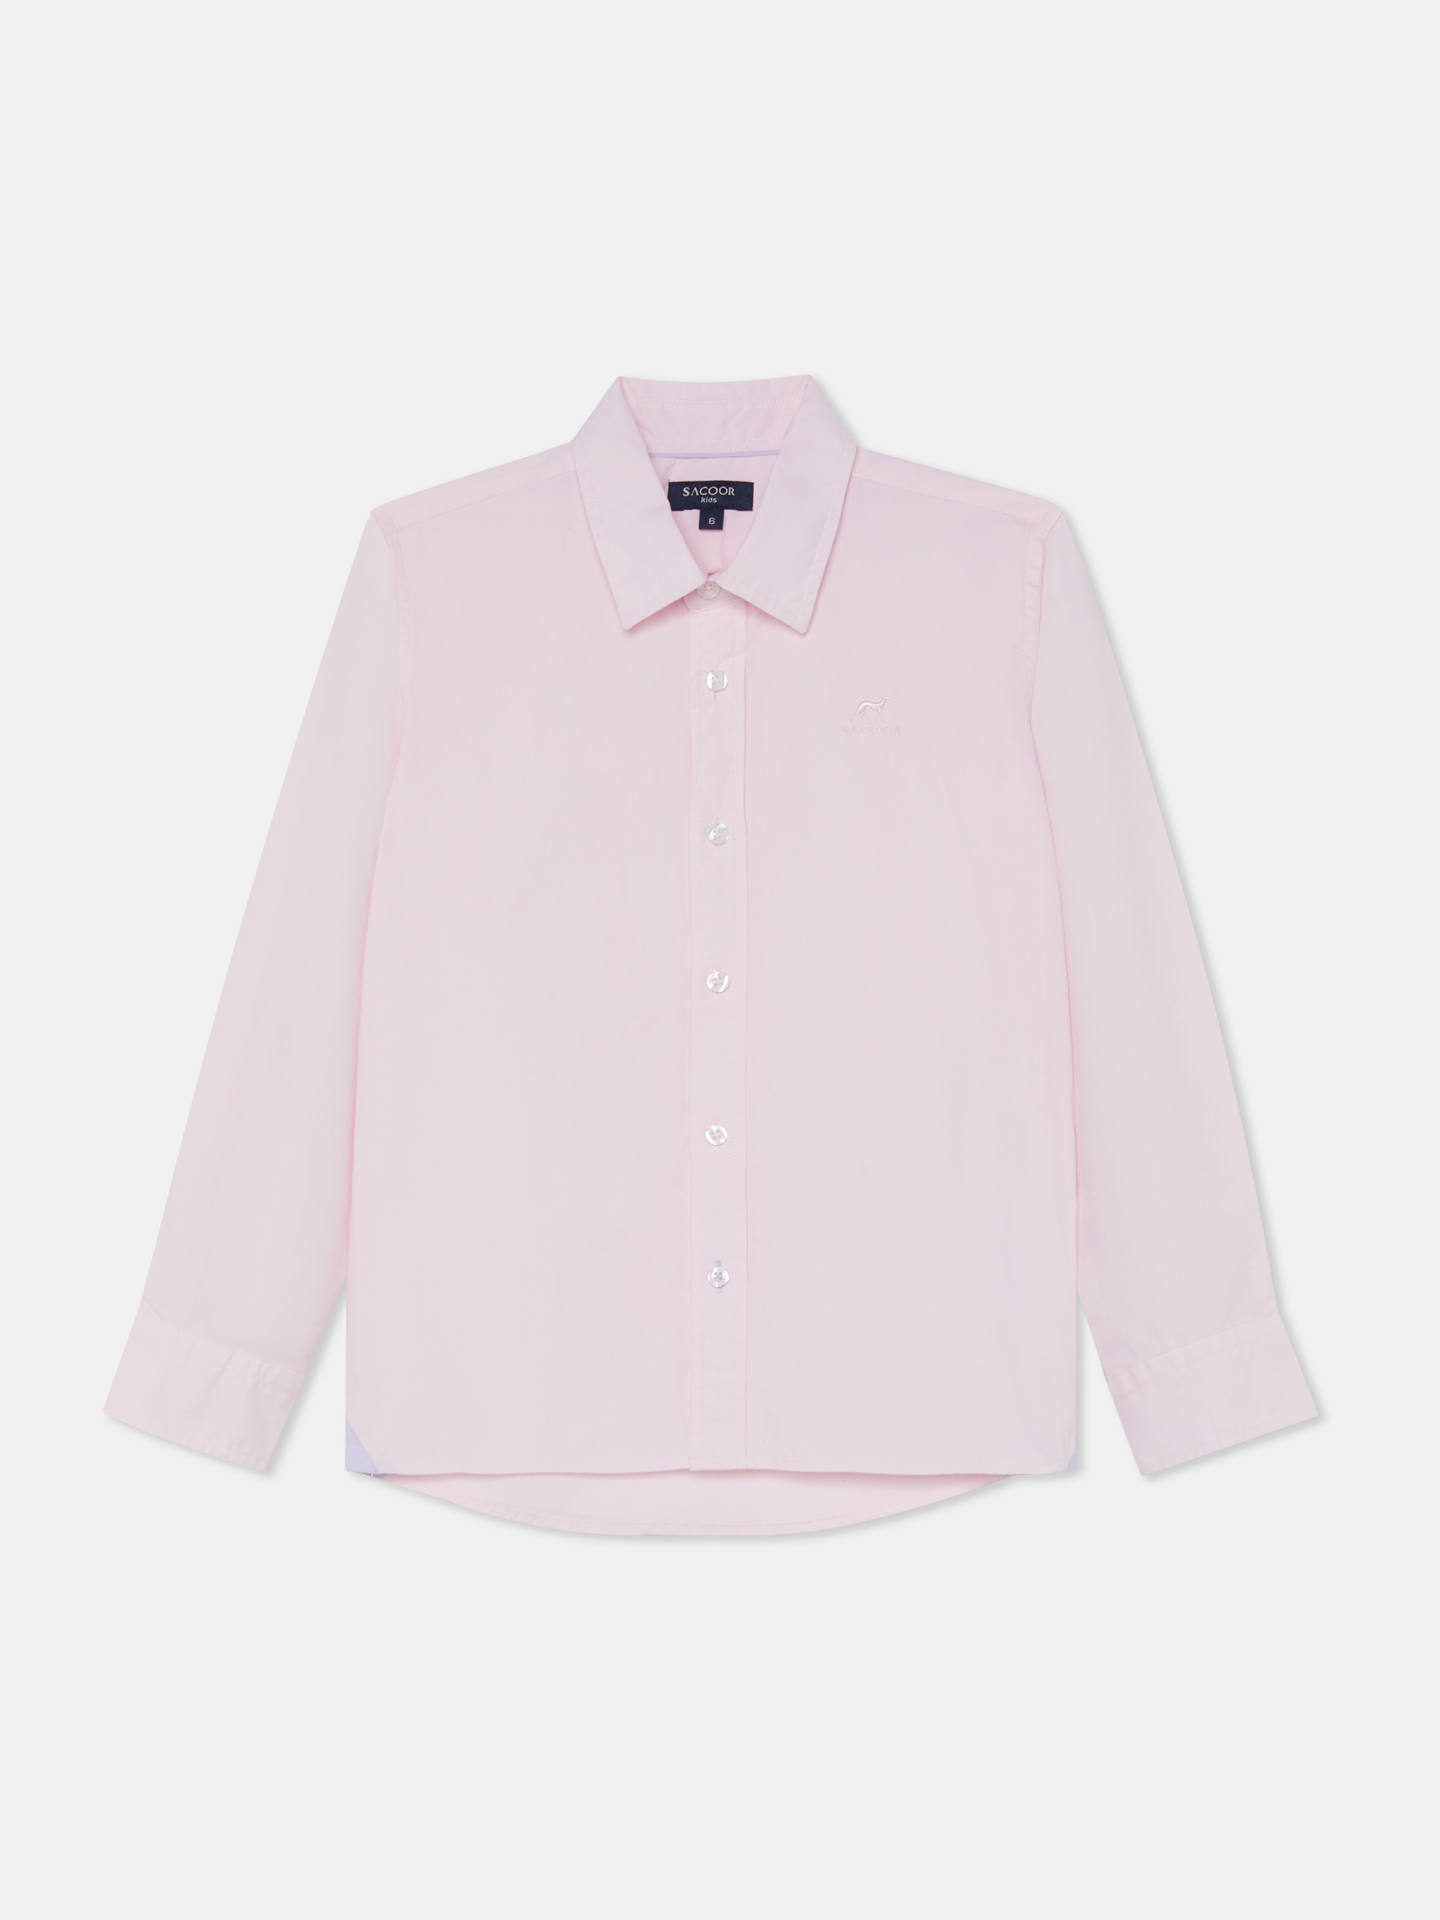 Shirt Sport Light Pink Casual Boy